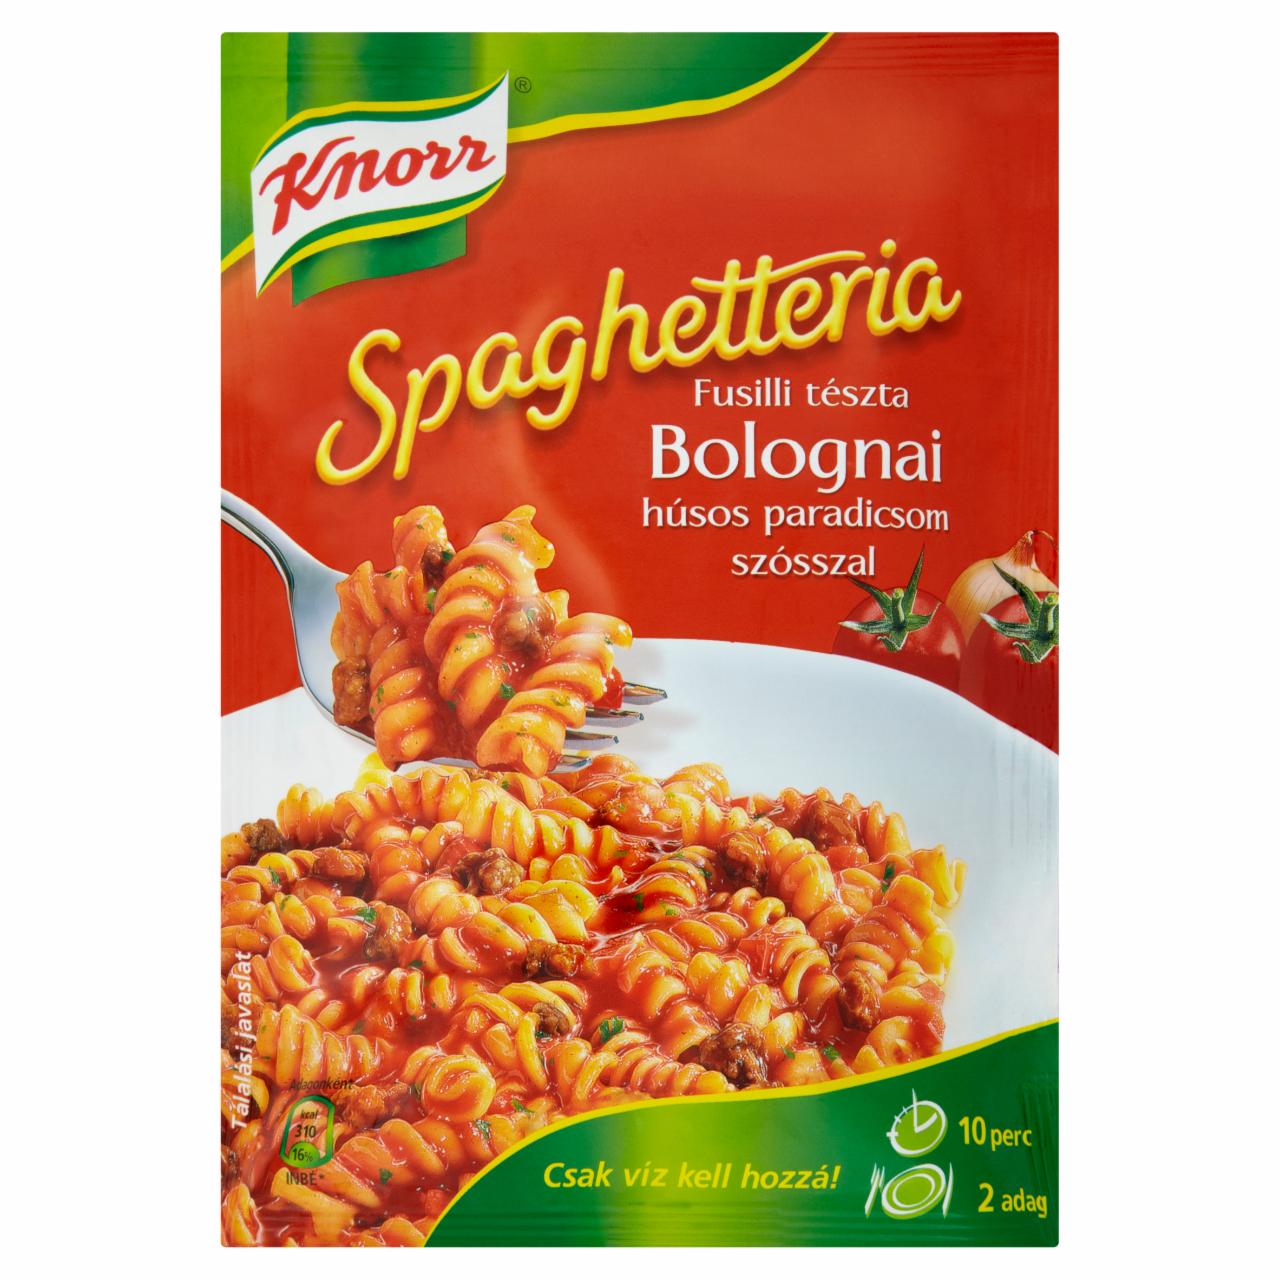 Képek - Knorr Spaghetteria fusilli tészta bolognai húsos paradicsom szósszal 175 g